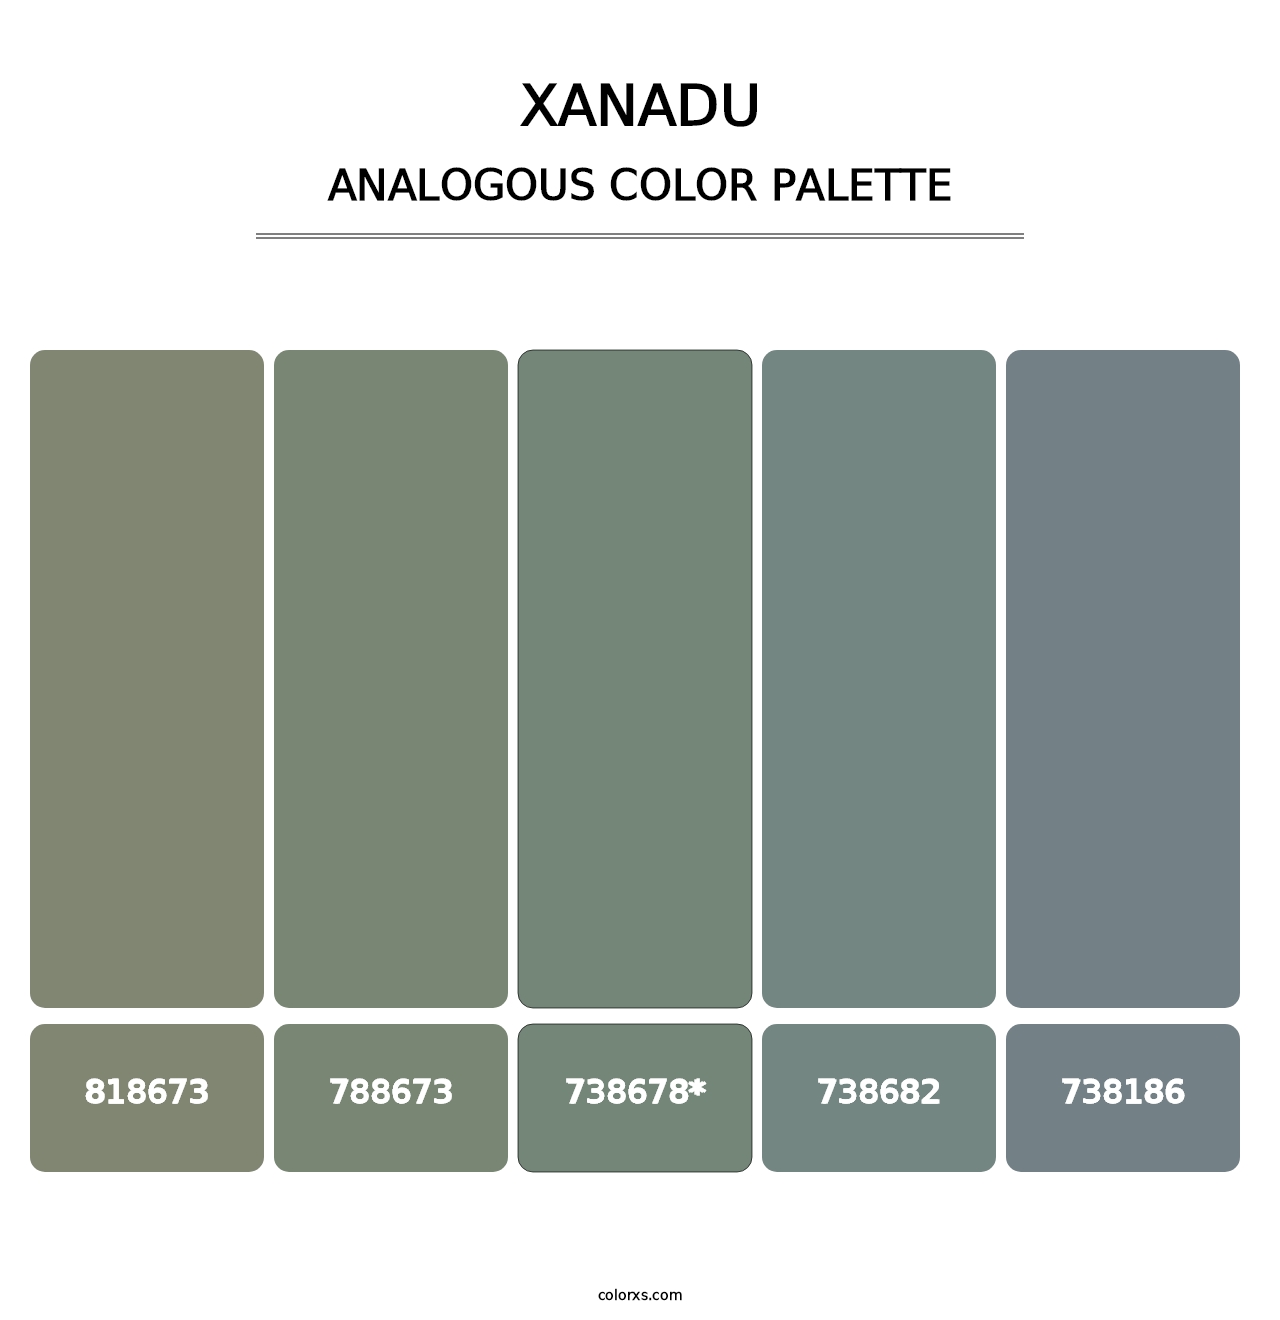 Xanadu - Analogous Color Palette